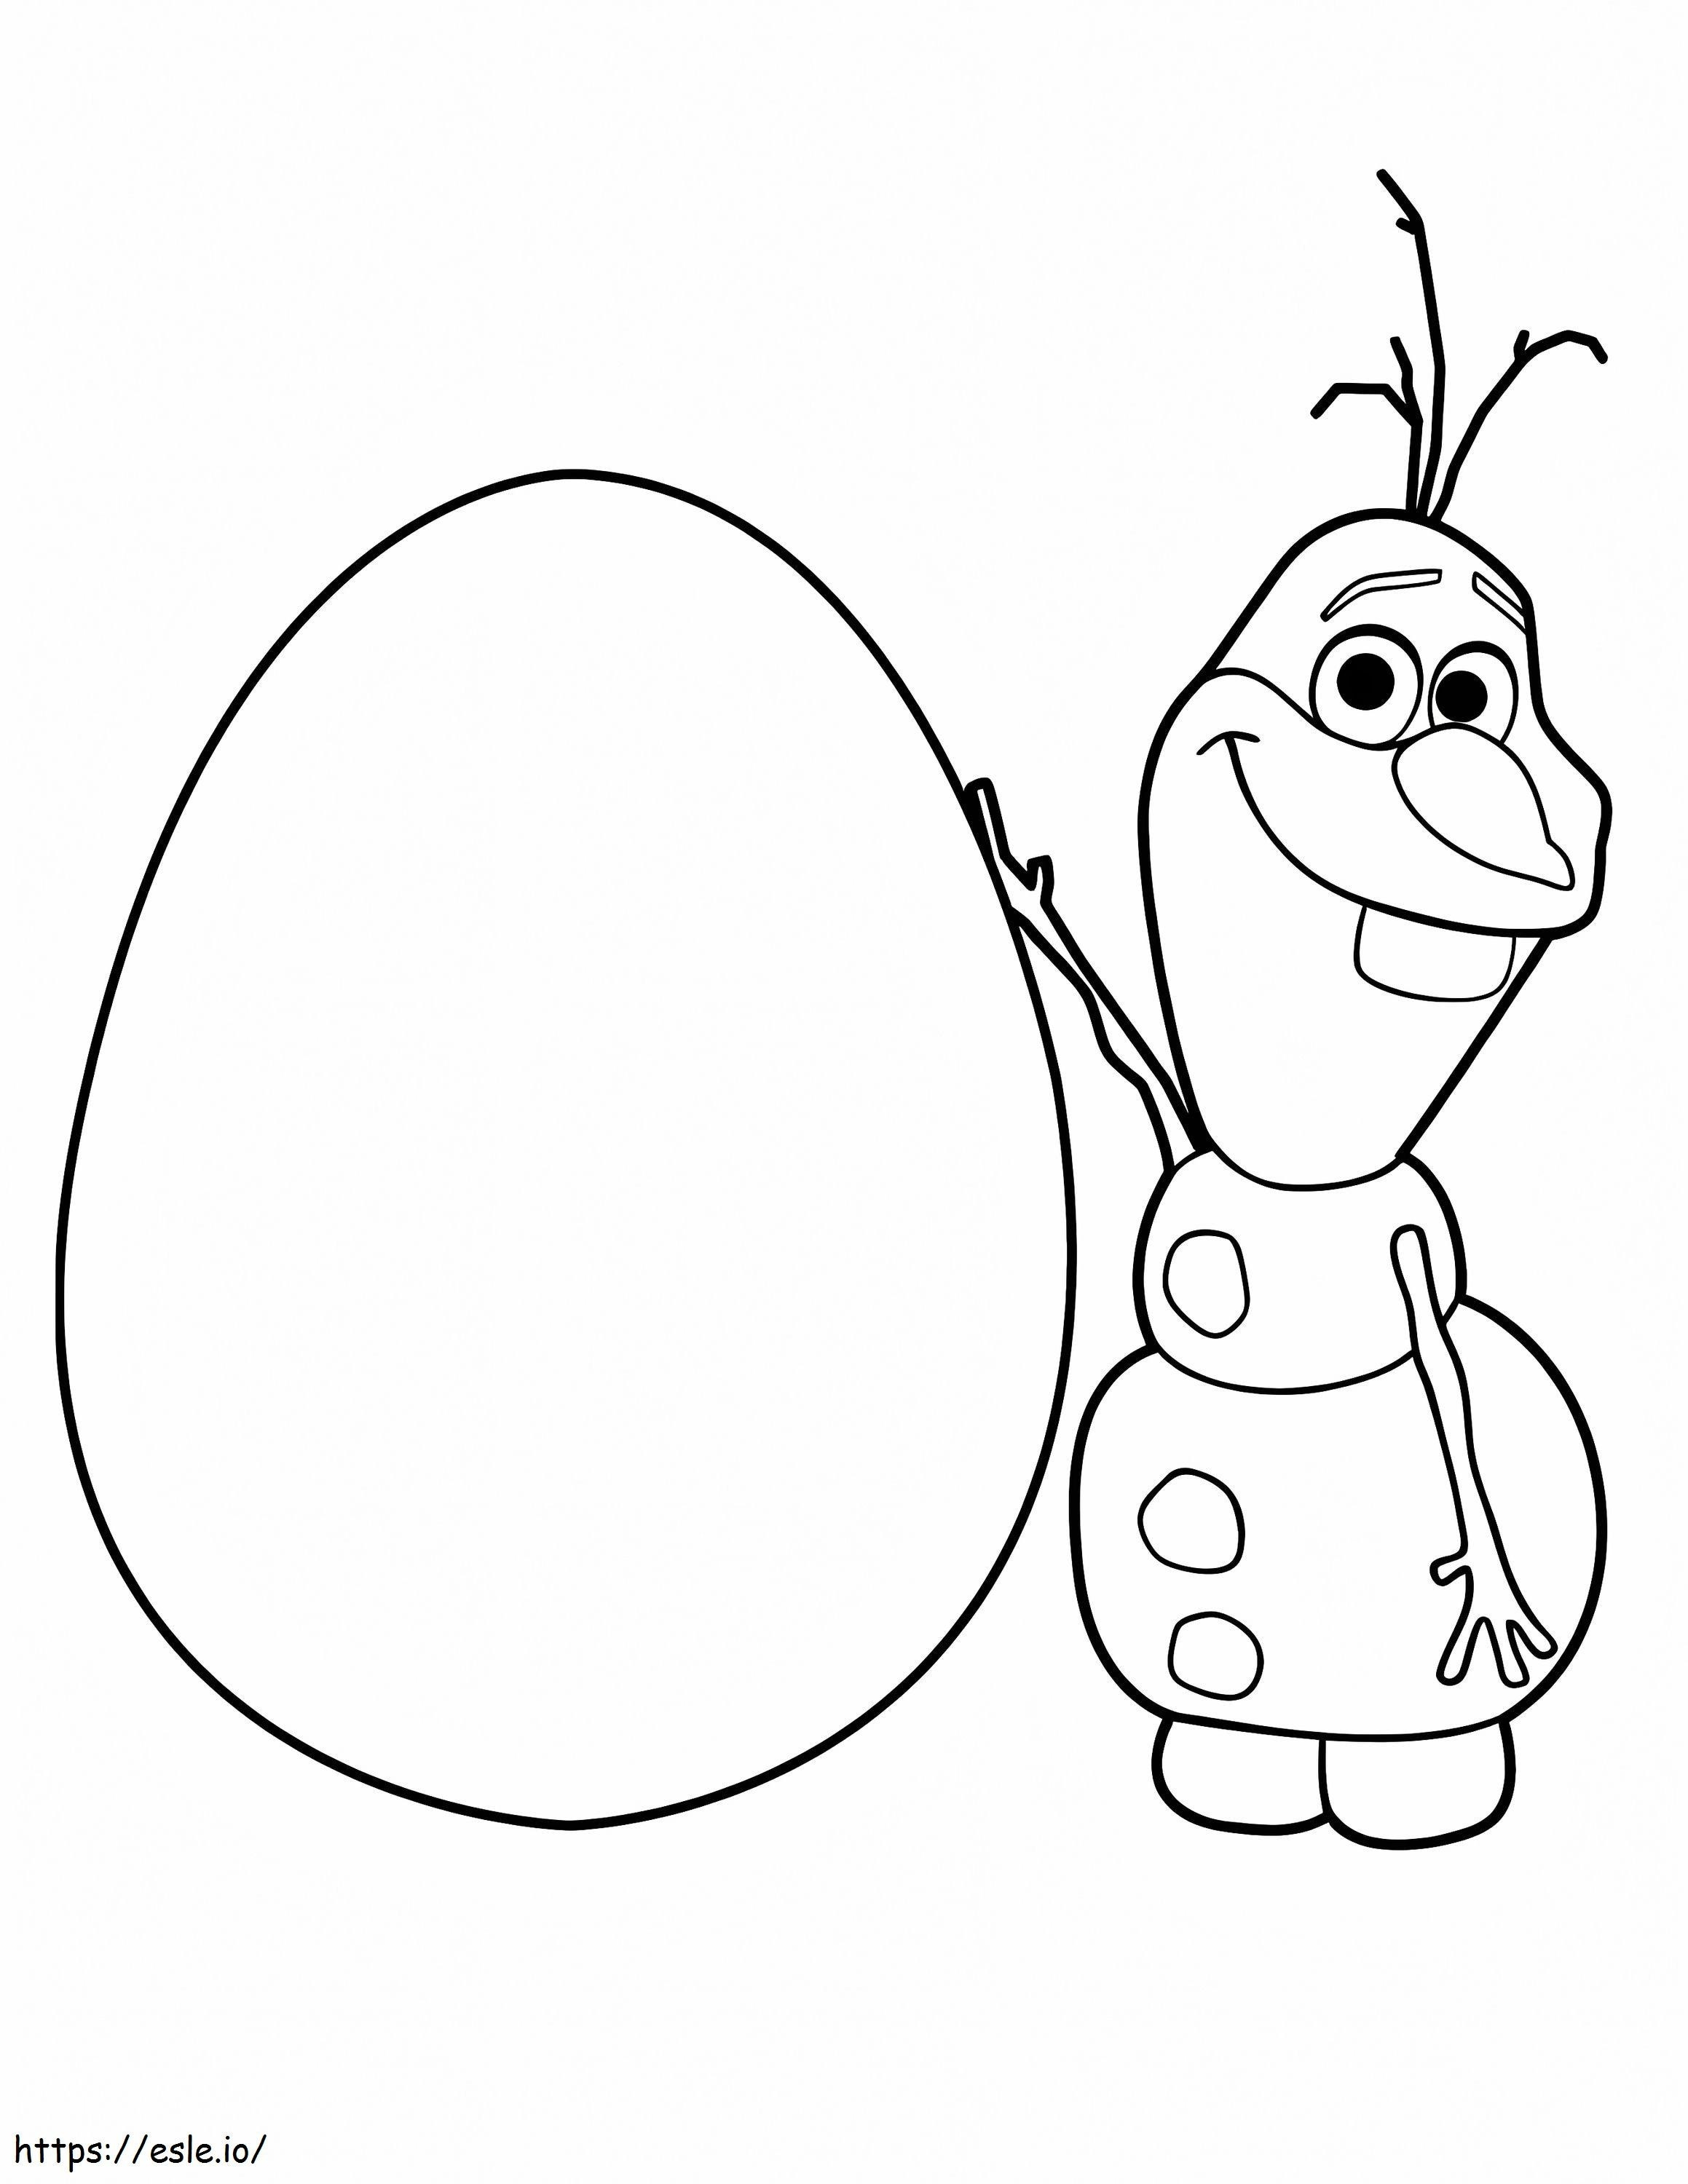 Olaf und Ei ausmalbilder